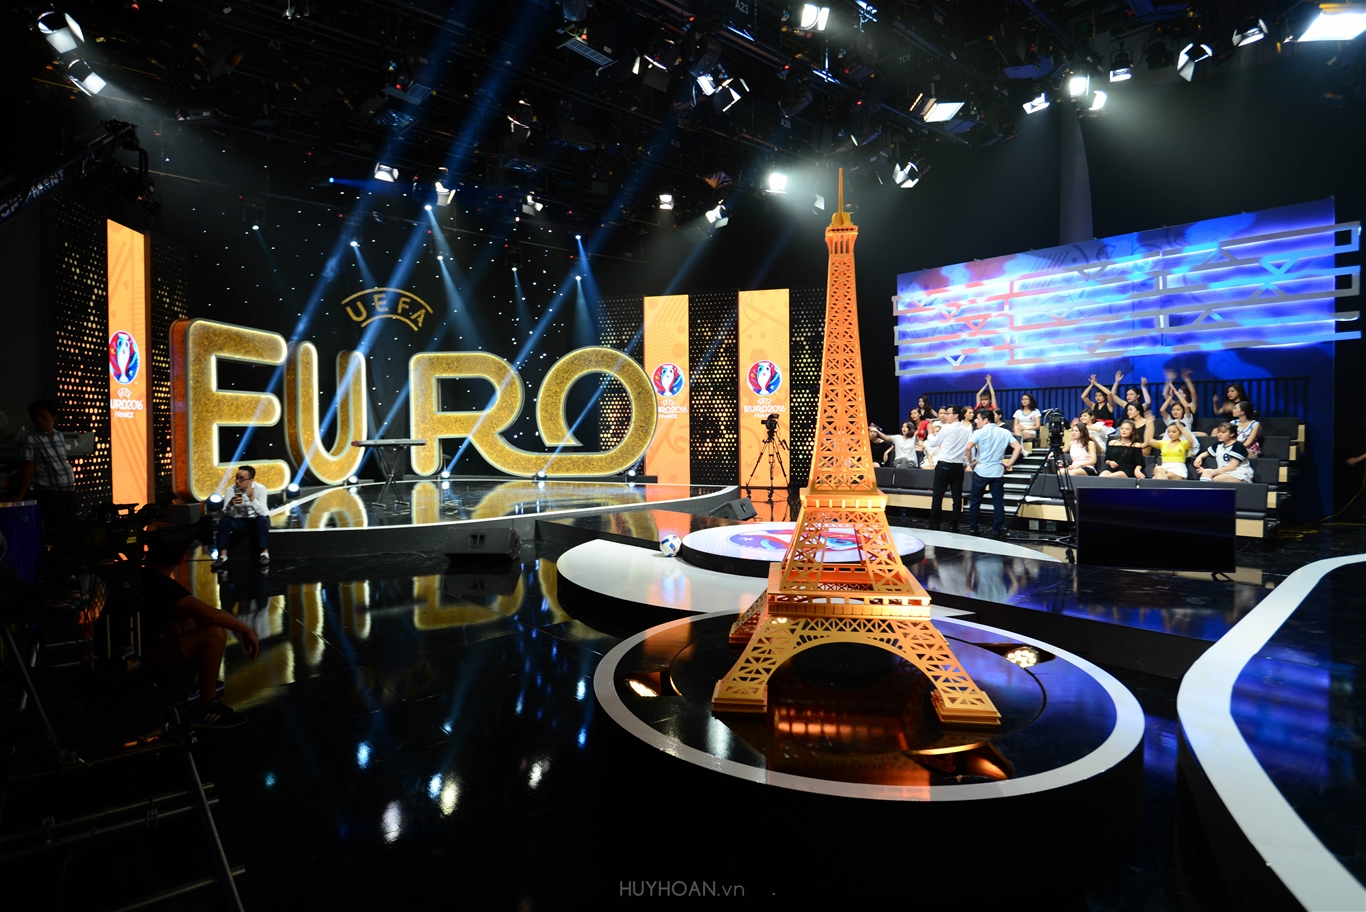 Thiết kế sân khấu bình luận Euro 2016